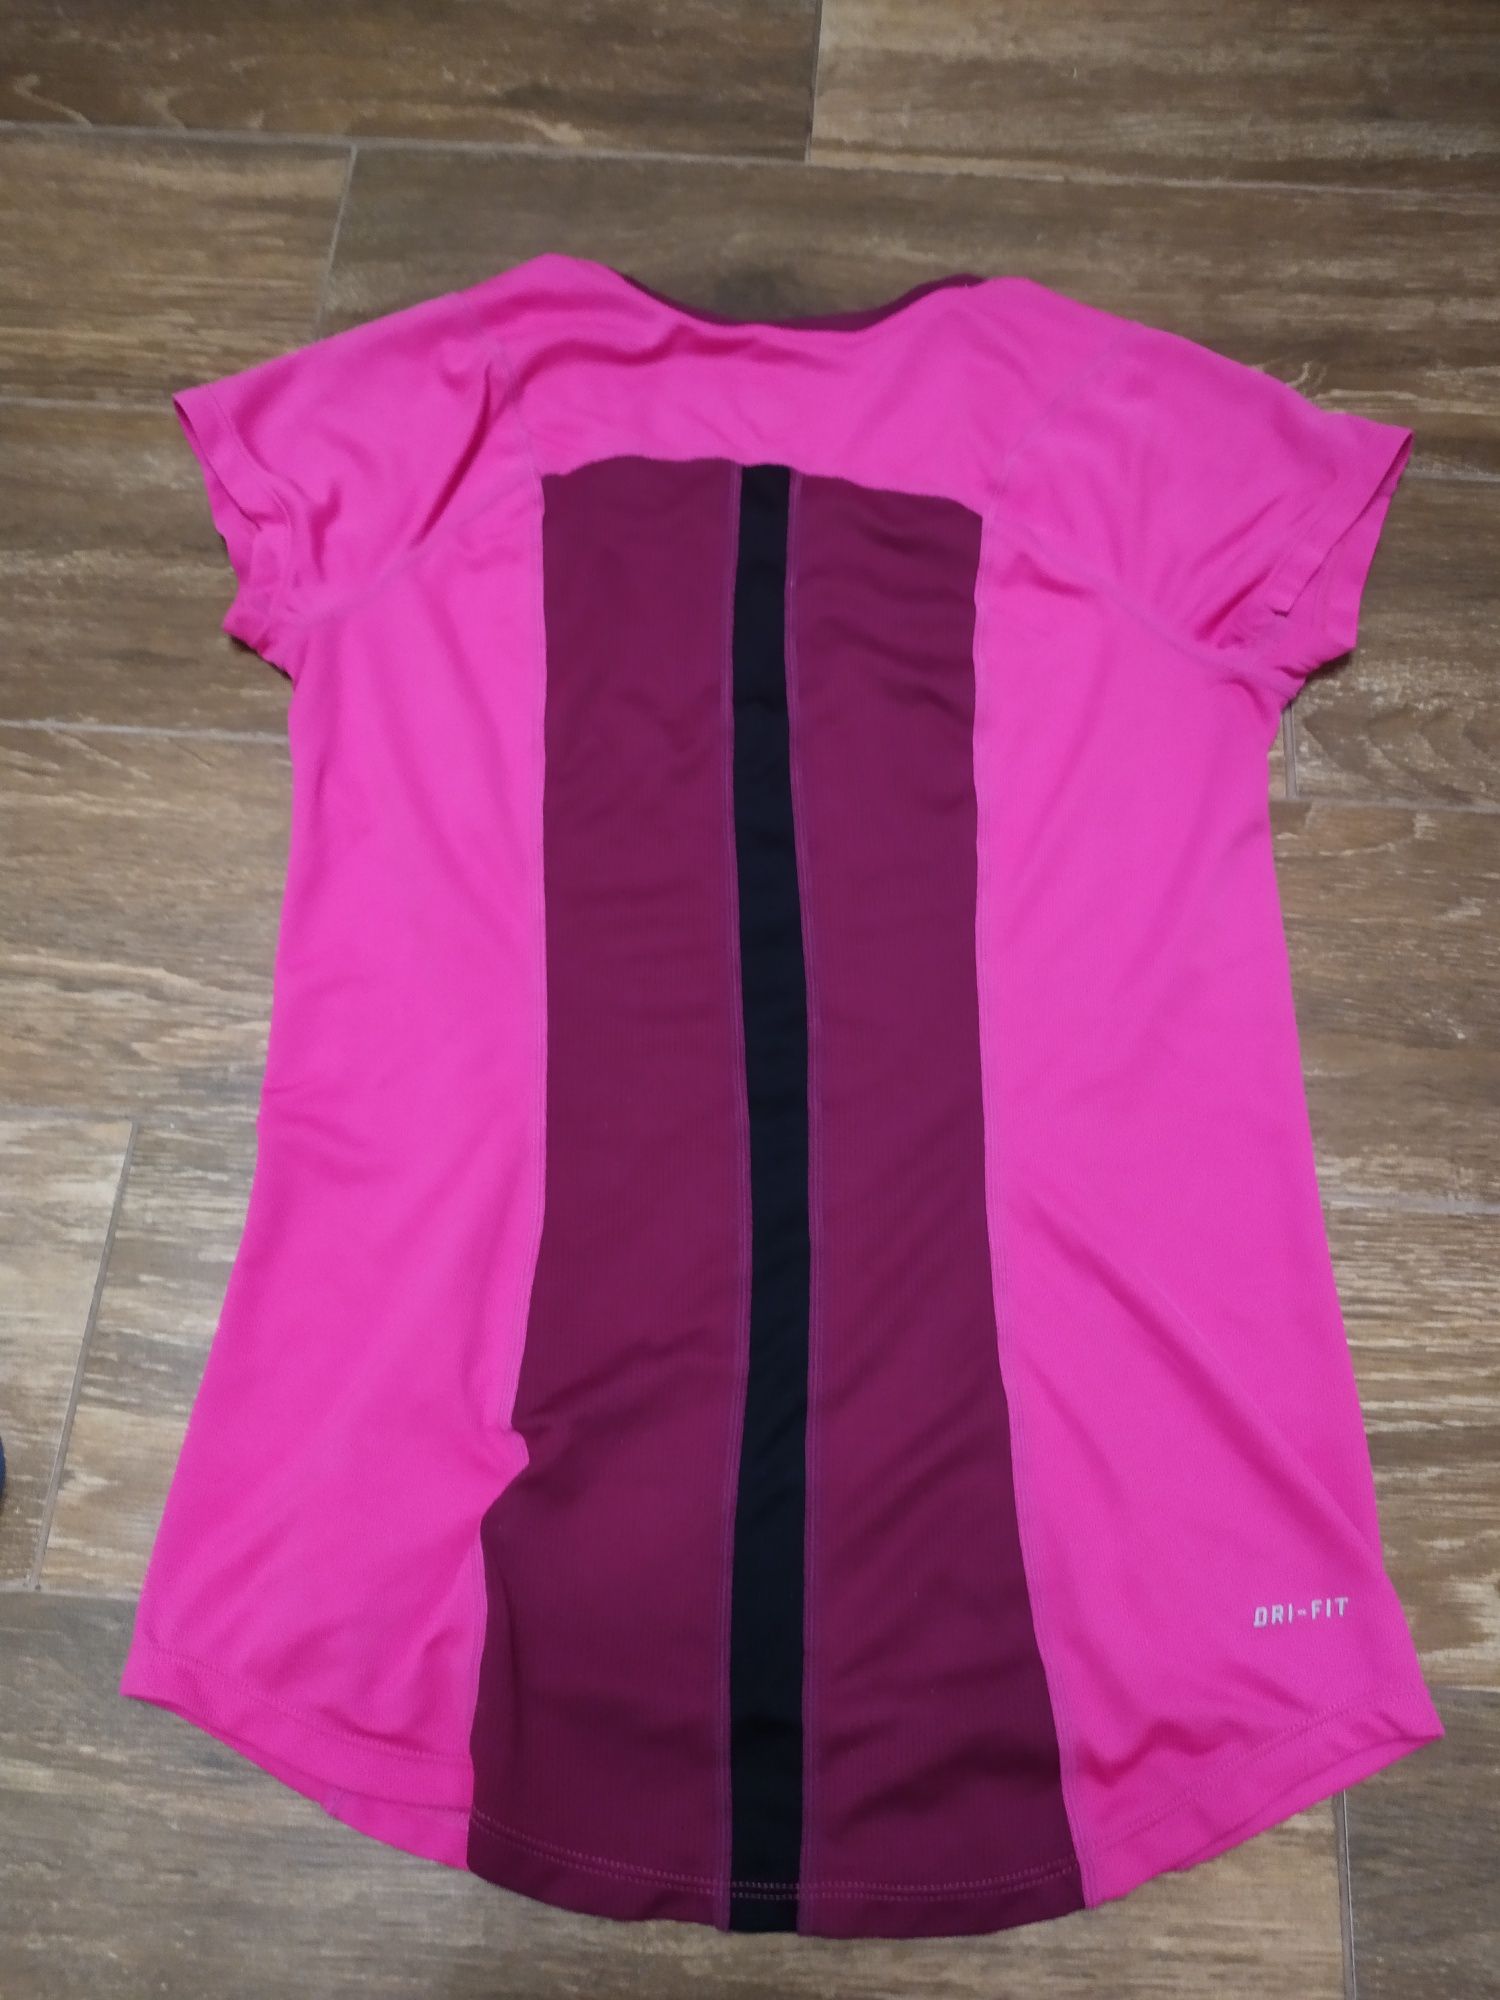 Koszulka Nike dri fit damska rozmiar S perforowana krótki rękaw różowa